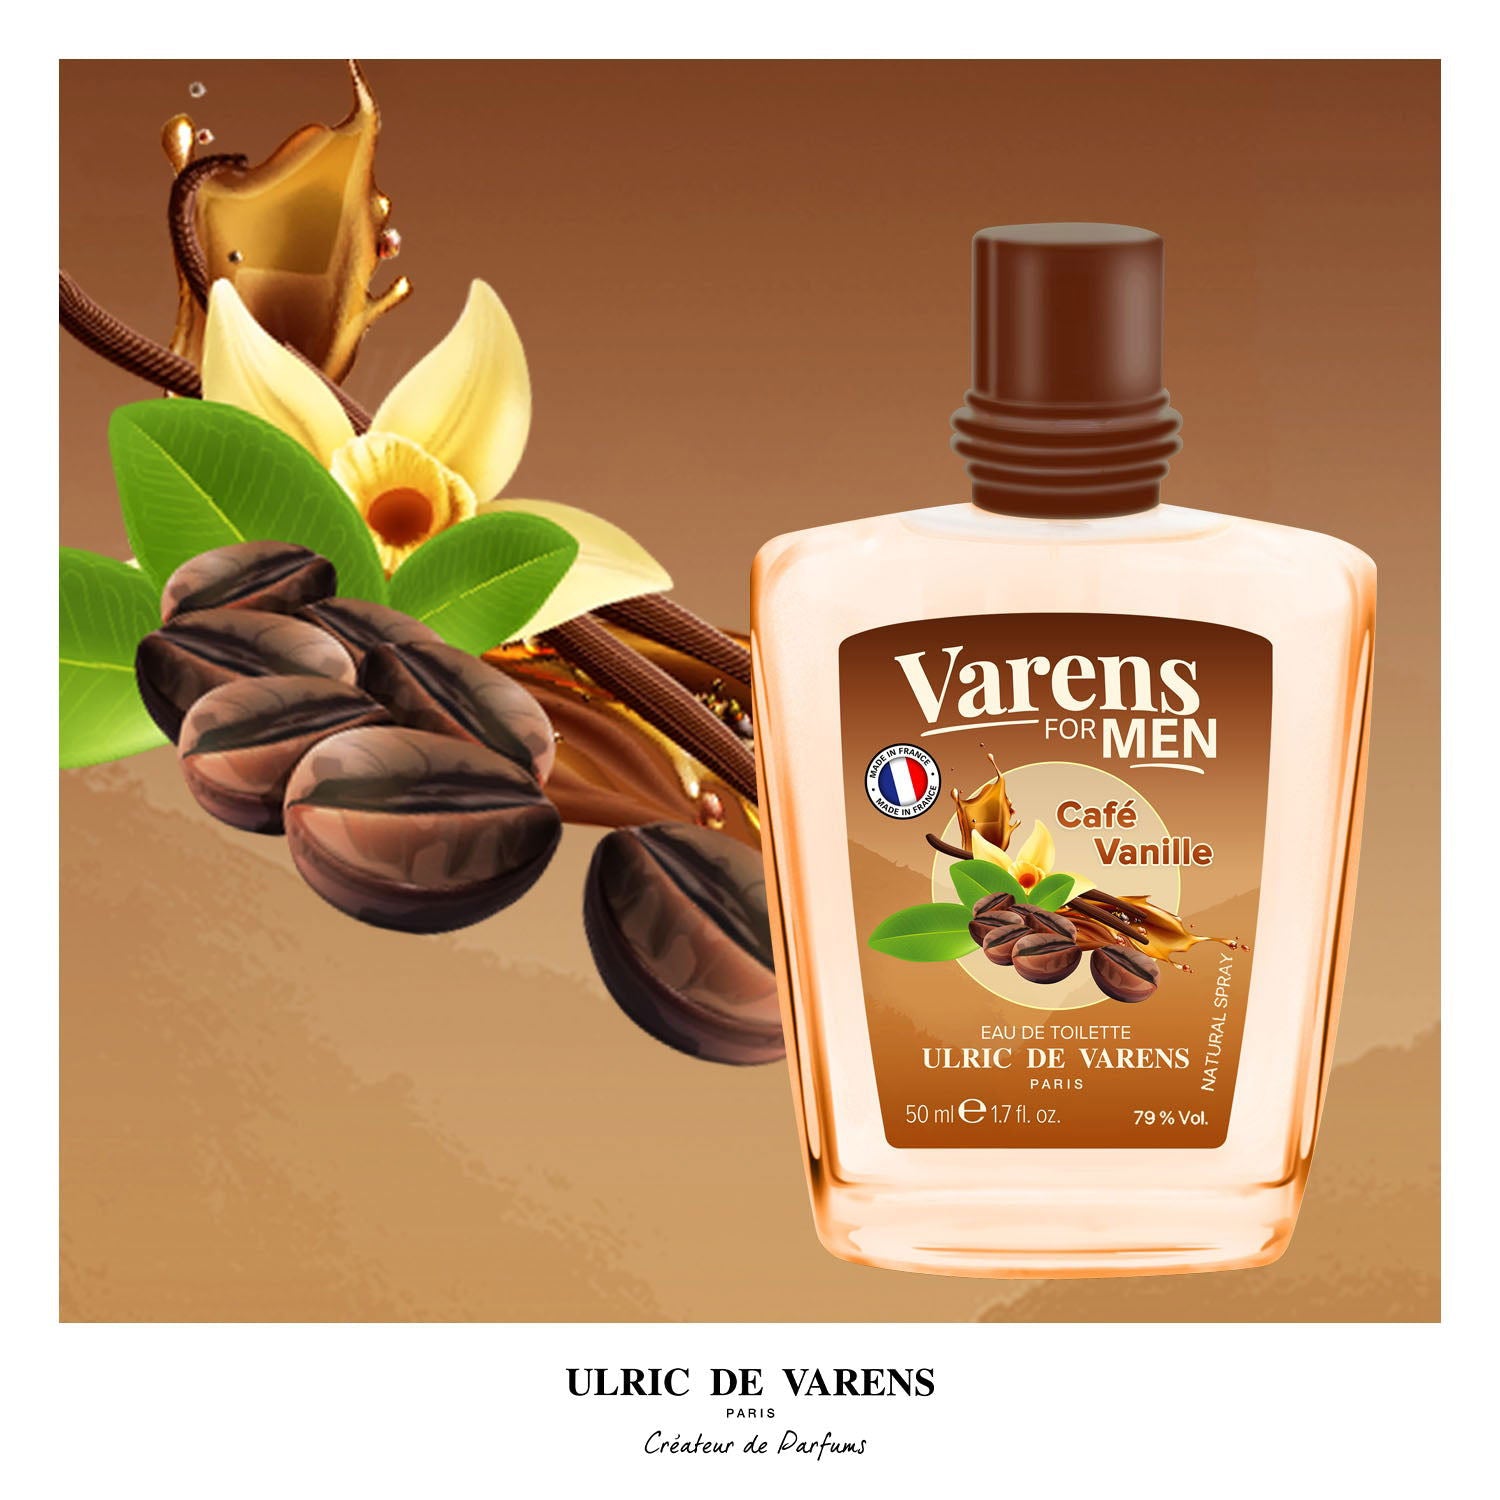 Varens For Men Cafe Vanille - Ulric de Varens -  - #tag1# - #tag2# - #tag3# - #tag4#